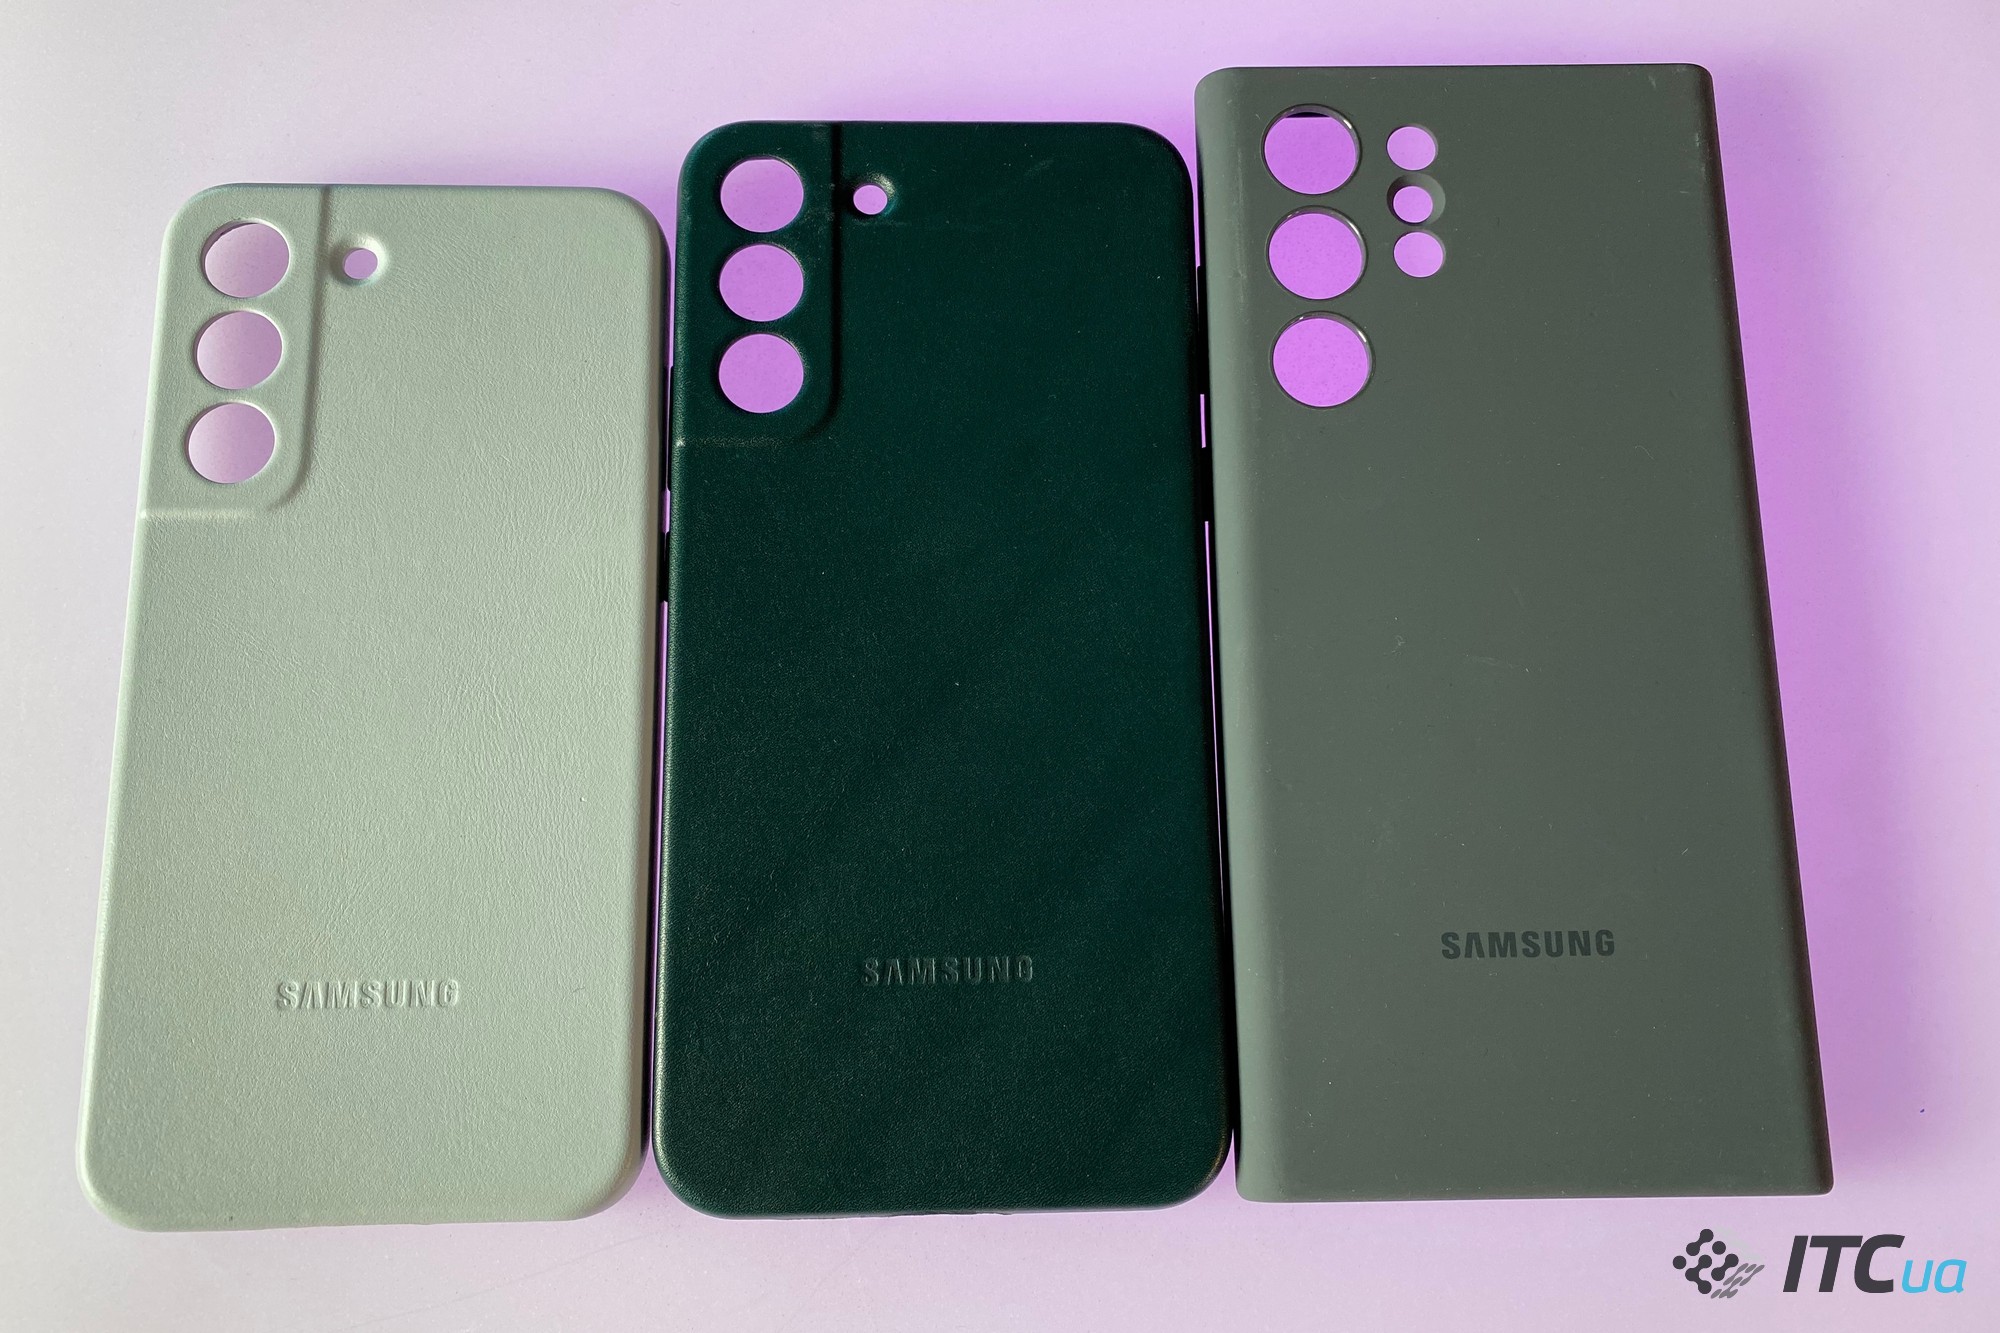 Первый взгляд на новые смартфоны Samsung Galaxy S22 / S22+ / S22 Ultra и планшеты Samsung Galaxy Tab S8 / S8+ / S8 Ultra